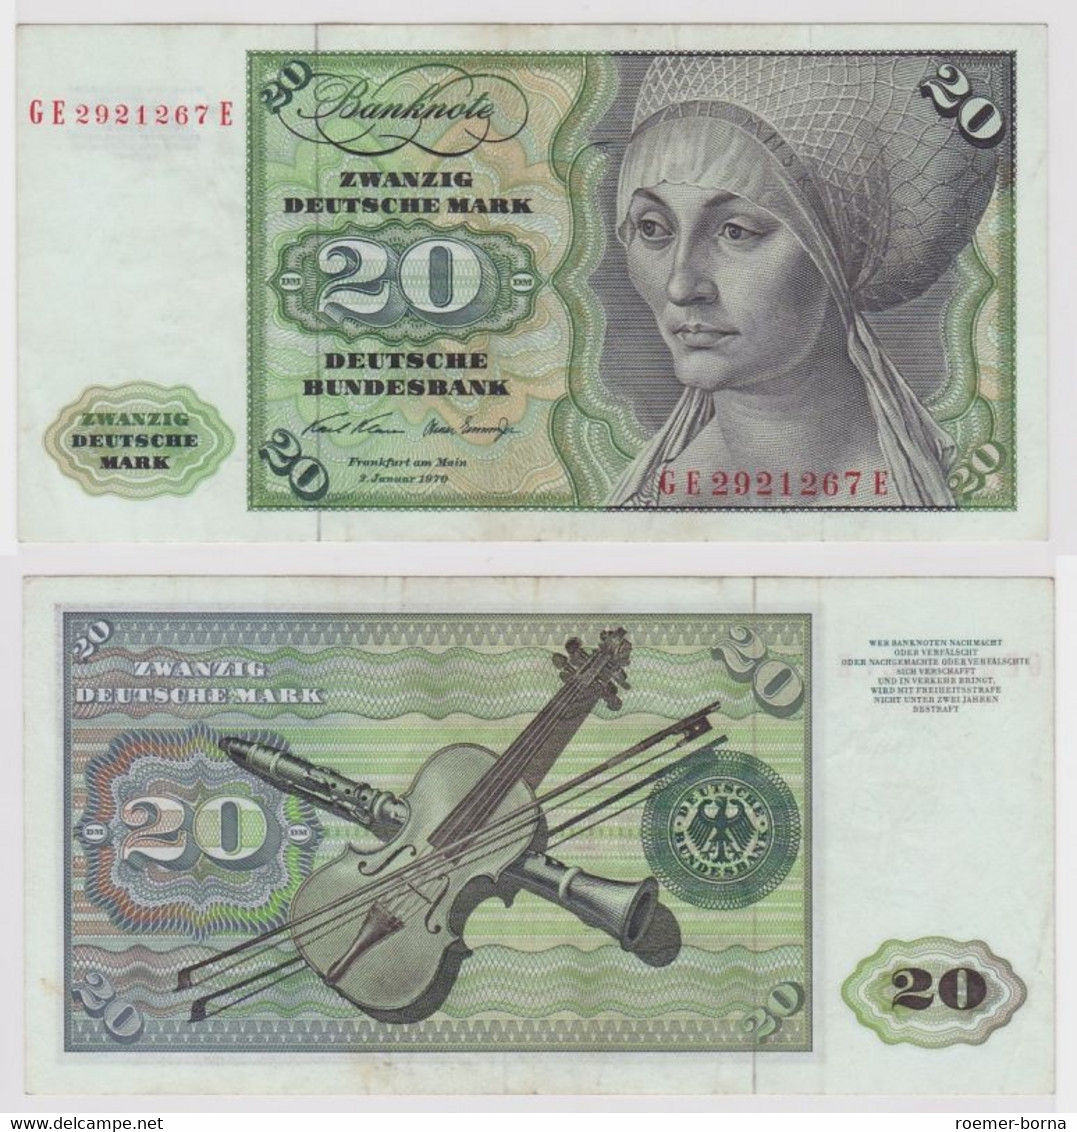 T116317 Banknote 20 DM Deutsche Mark Ro. 271b Schein 2.Jan. 1970 KN GE 2921267 E - 20 Deutsche Mark